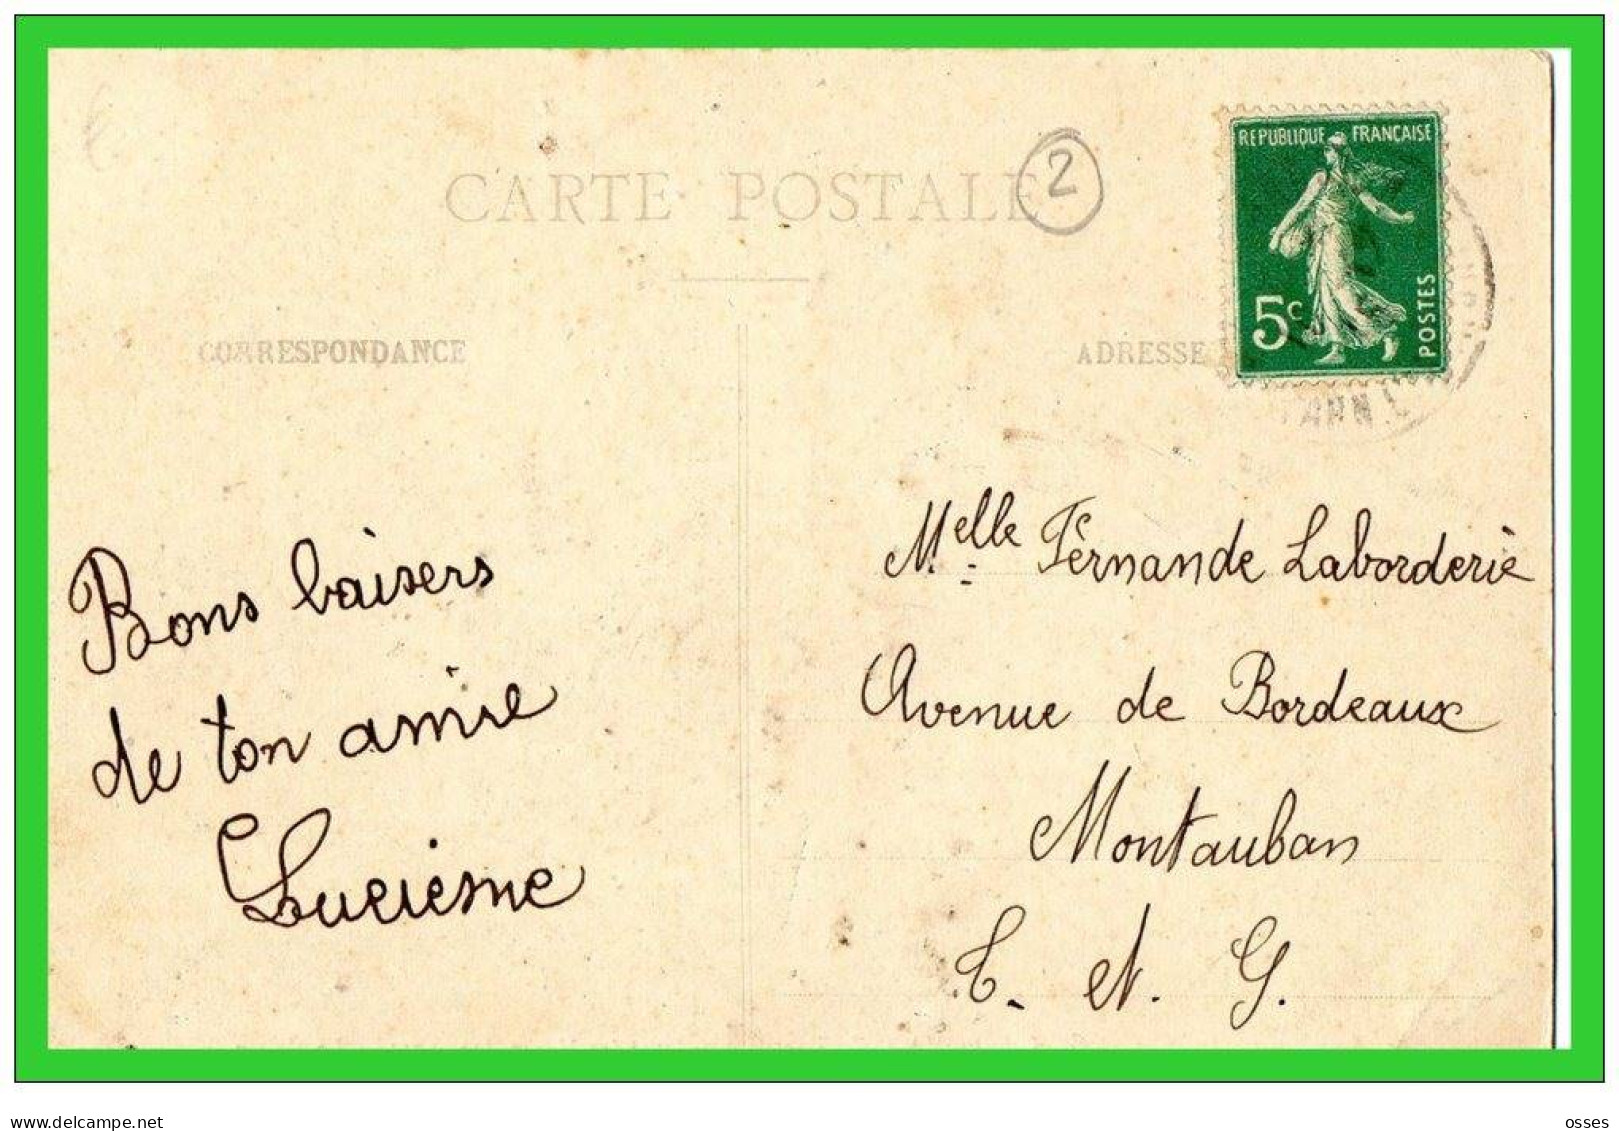 TROIS C.P.A.Lavit De Lomagne.Grandes Manoeuvres1913.Rue De L'Industrie.Mairie.Vue.(rectos Versos) - Lavit